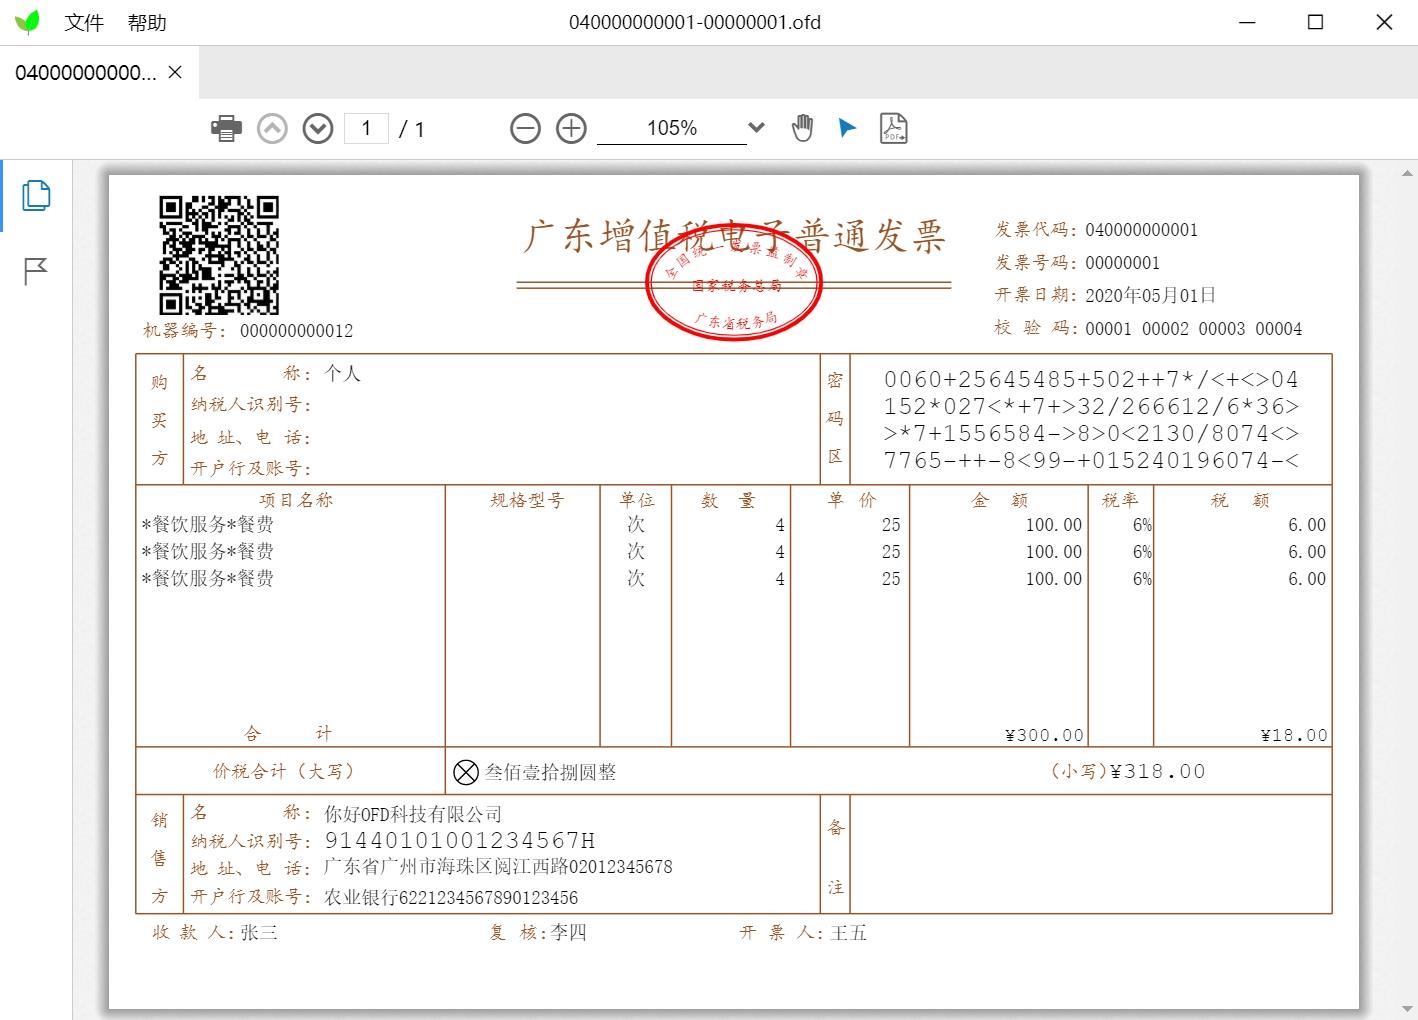 HiOFD阅读器主界面展示打开增值税电子发票OFD文件